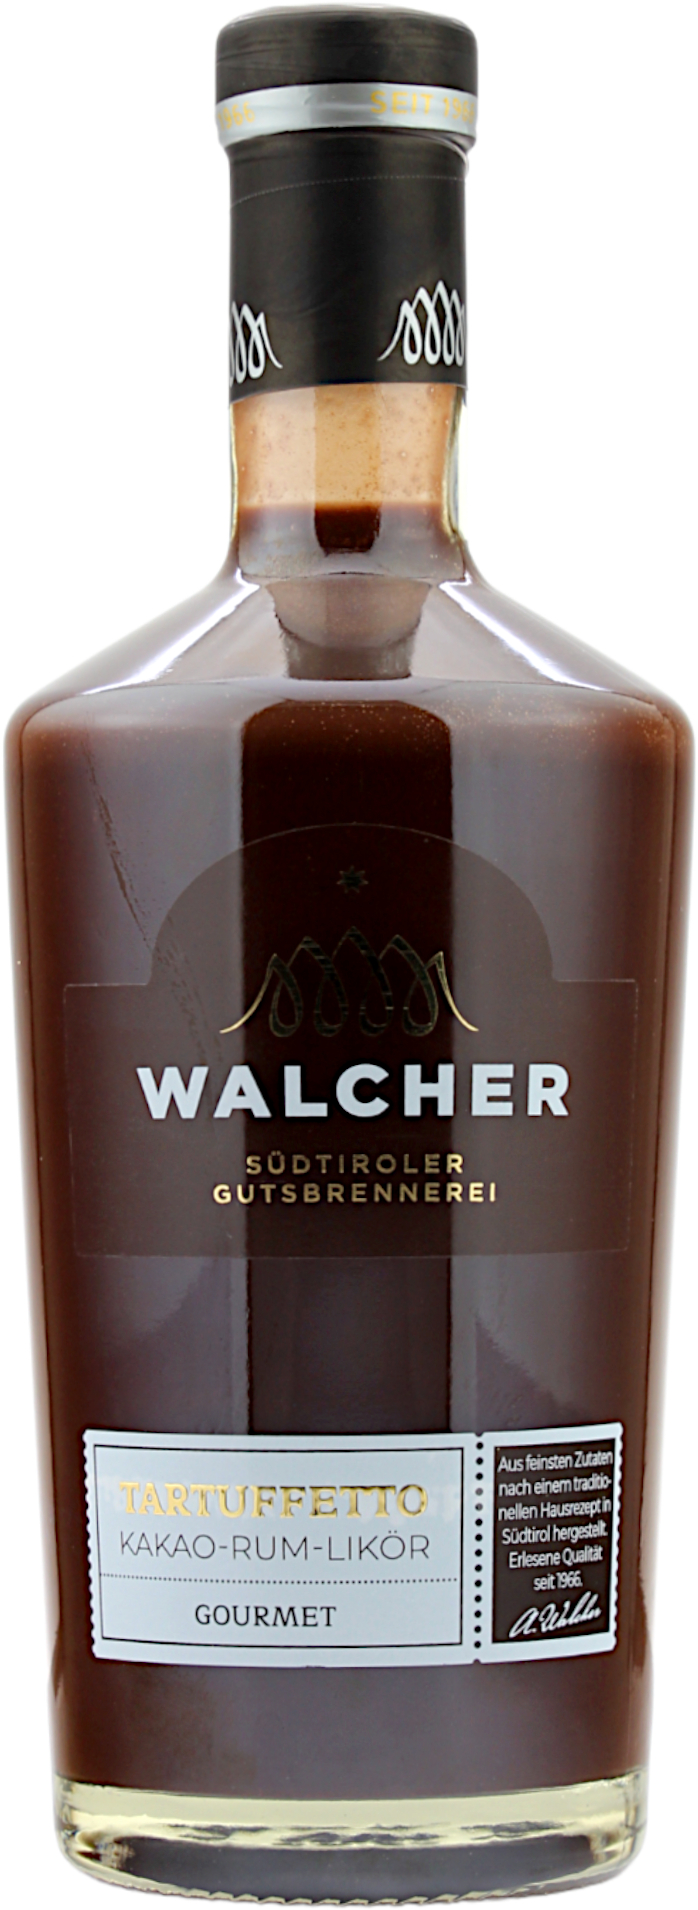 Walcher Tartuffetto 17.0% 0,7l